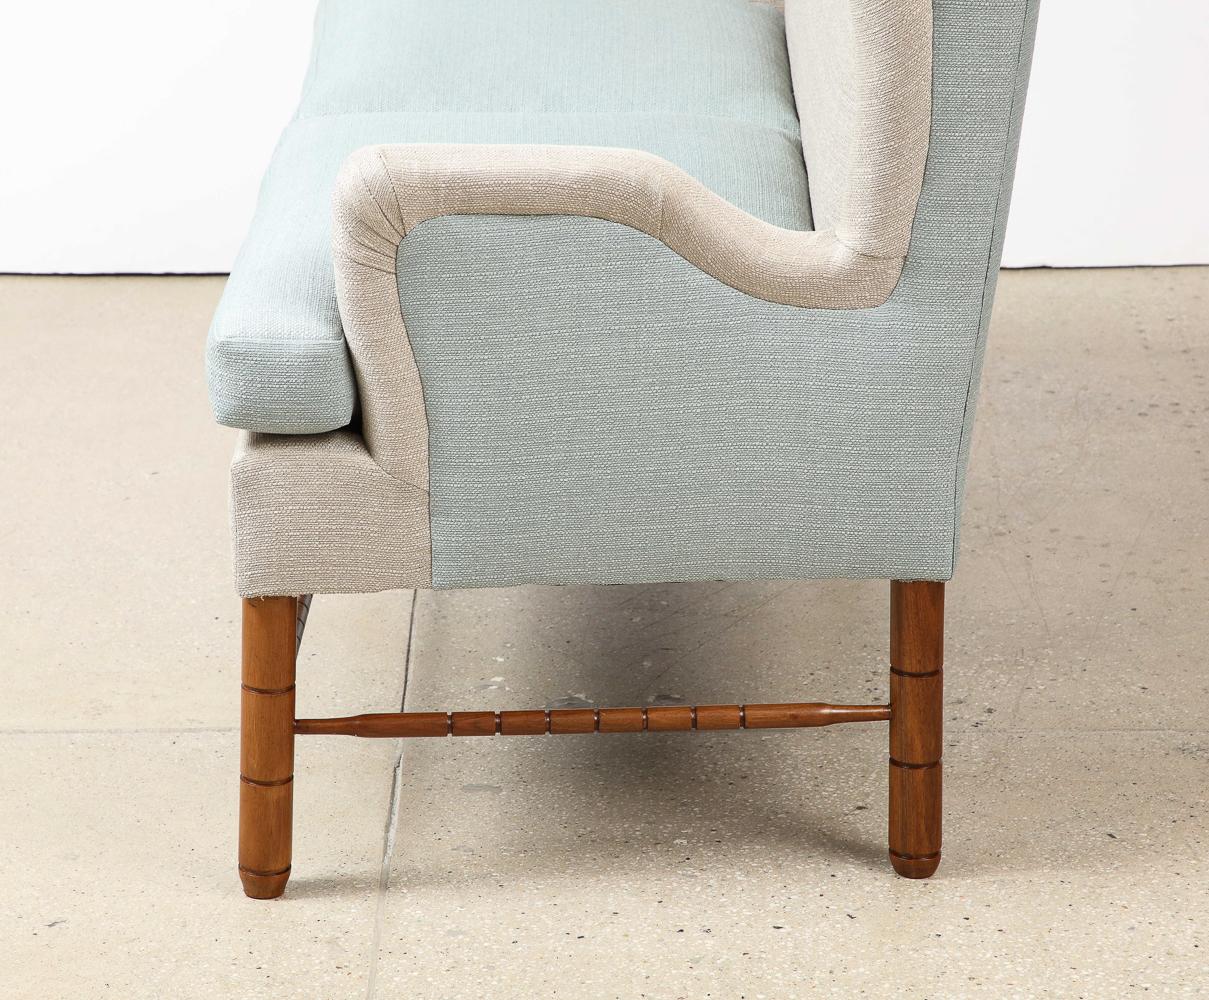 Nussbaum, Stoff. Maßgeschneidertes Sofa für einen privaten Auftrag, hergestellt von ABV. Dieses Beispiel stammt aus dem Jahr 1949, obwohl das Design selbst aus dem Jahr 1943 stammt.